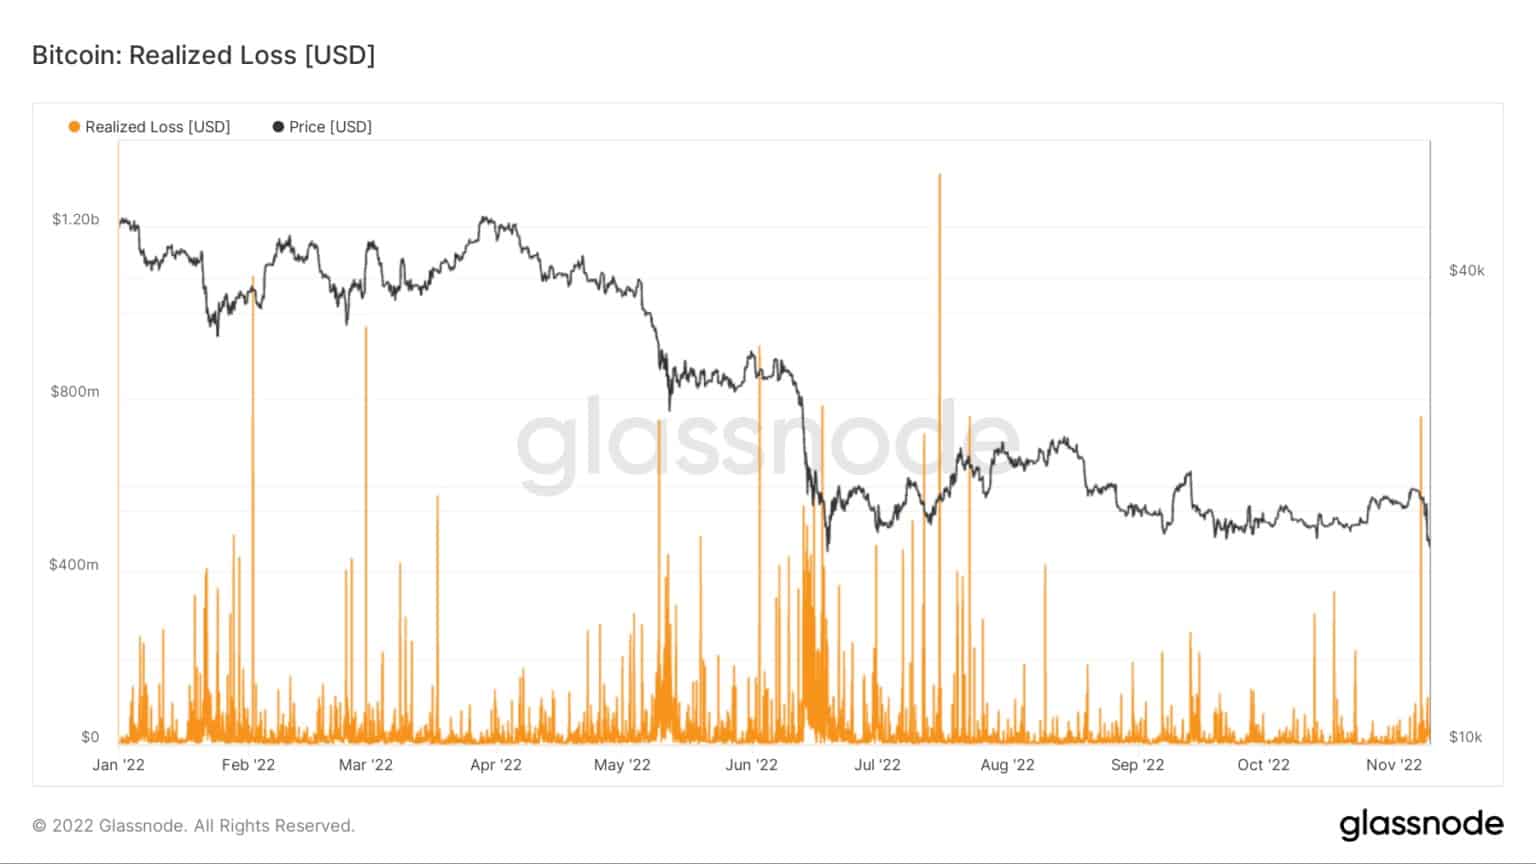 Graf znázorňující realizované ztráty bitcoinu v roce 2022 (zdroj: Glassnode)